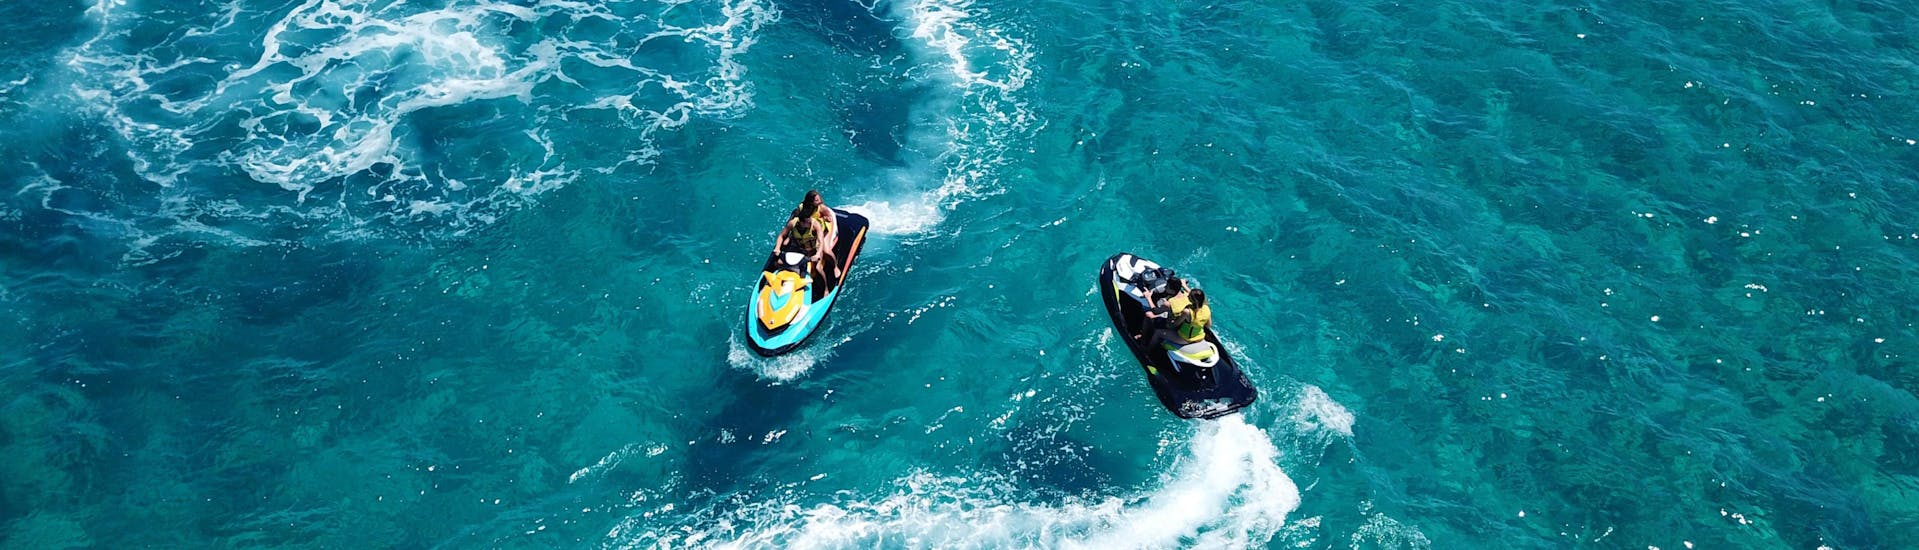 Santorini: Een groep vrienden maakt een ritje met een bananenboot.Santorini: Een groep vrienden maakt een ritje met een bananenboot.